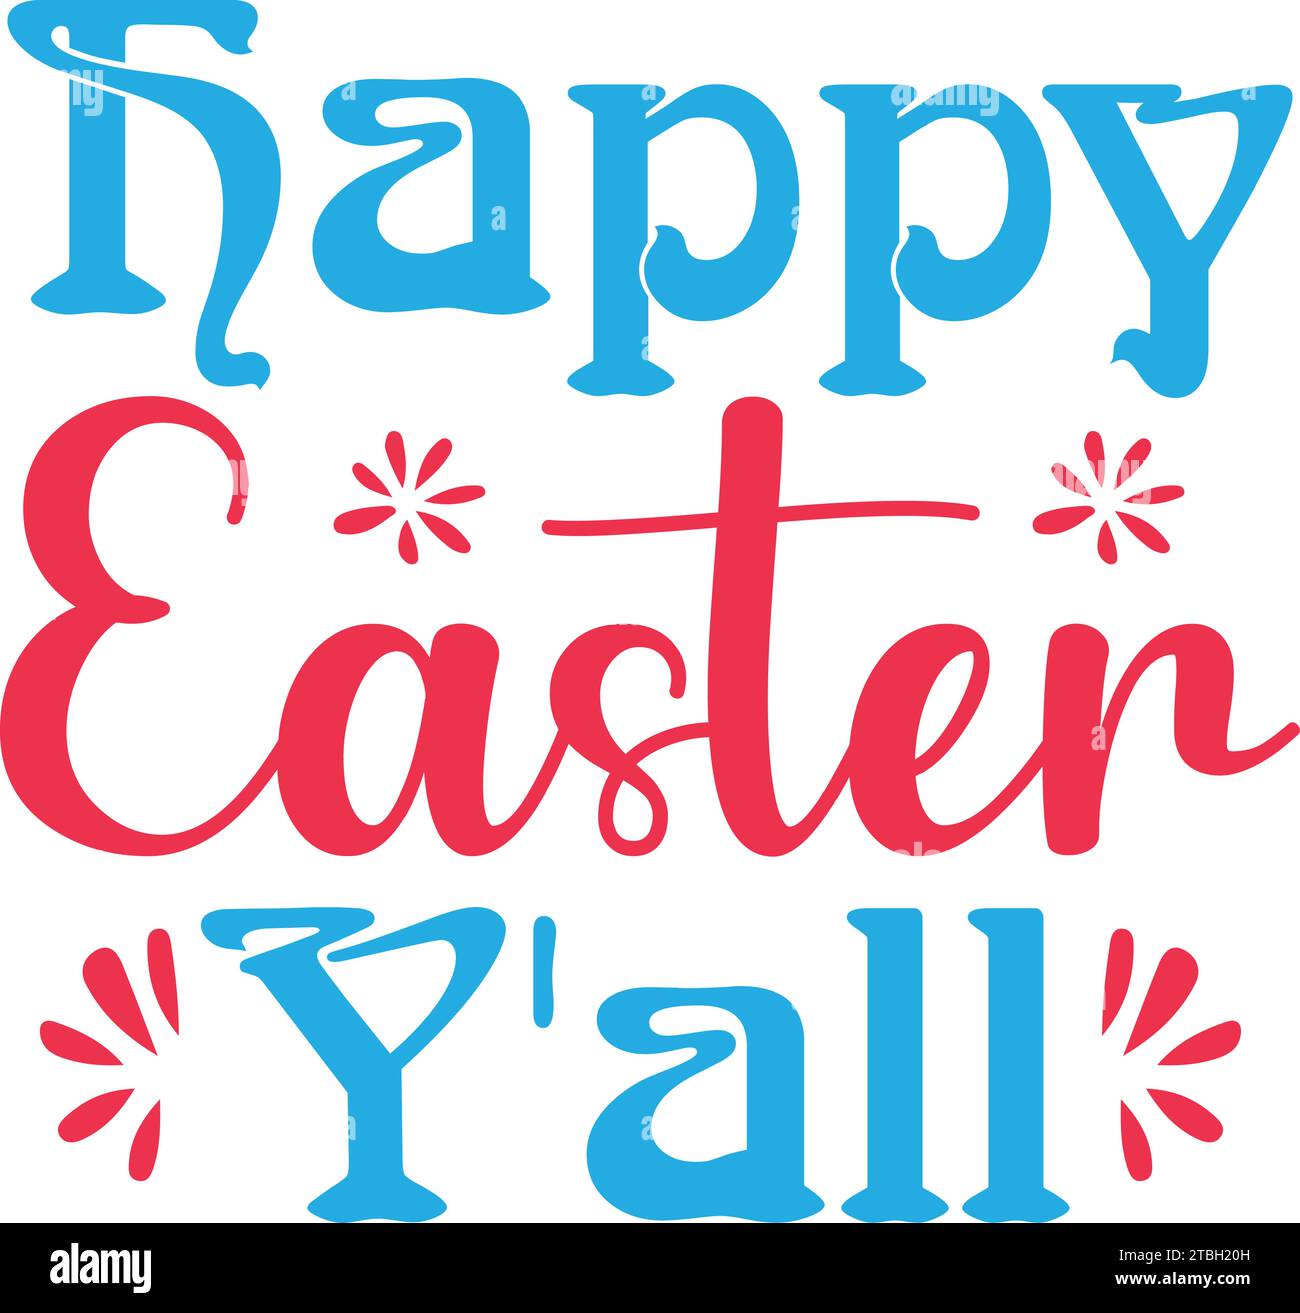 Happy Easter Y'all SVG , Retro SVG Design Stock Vector